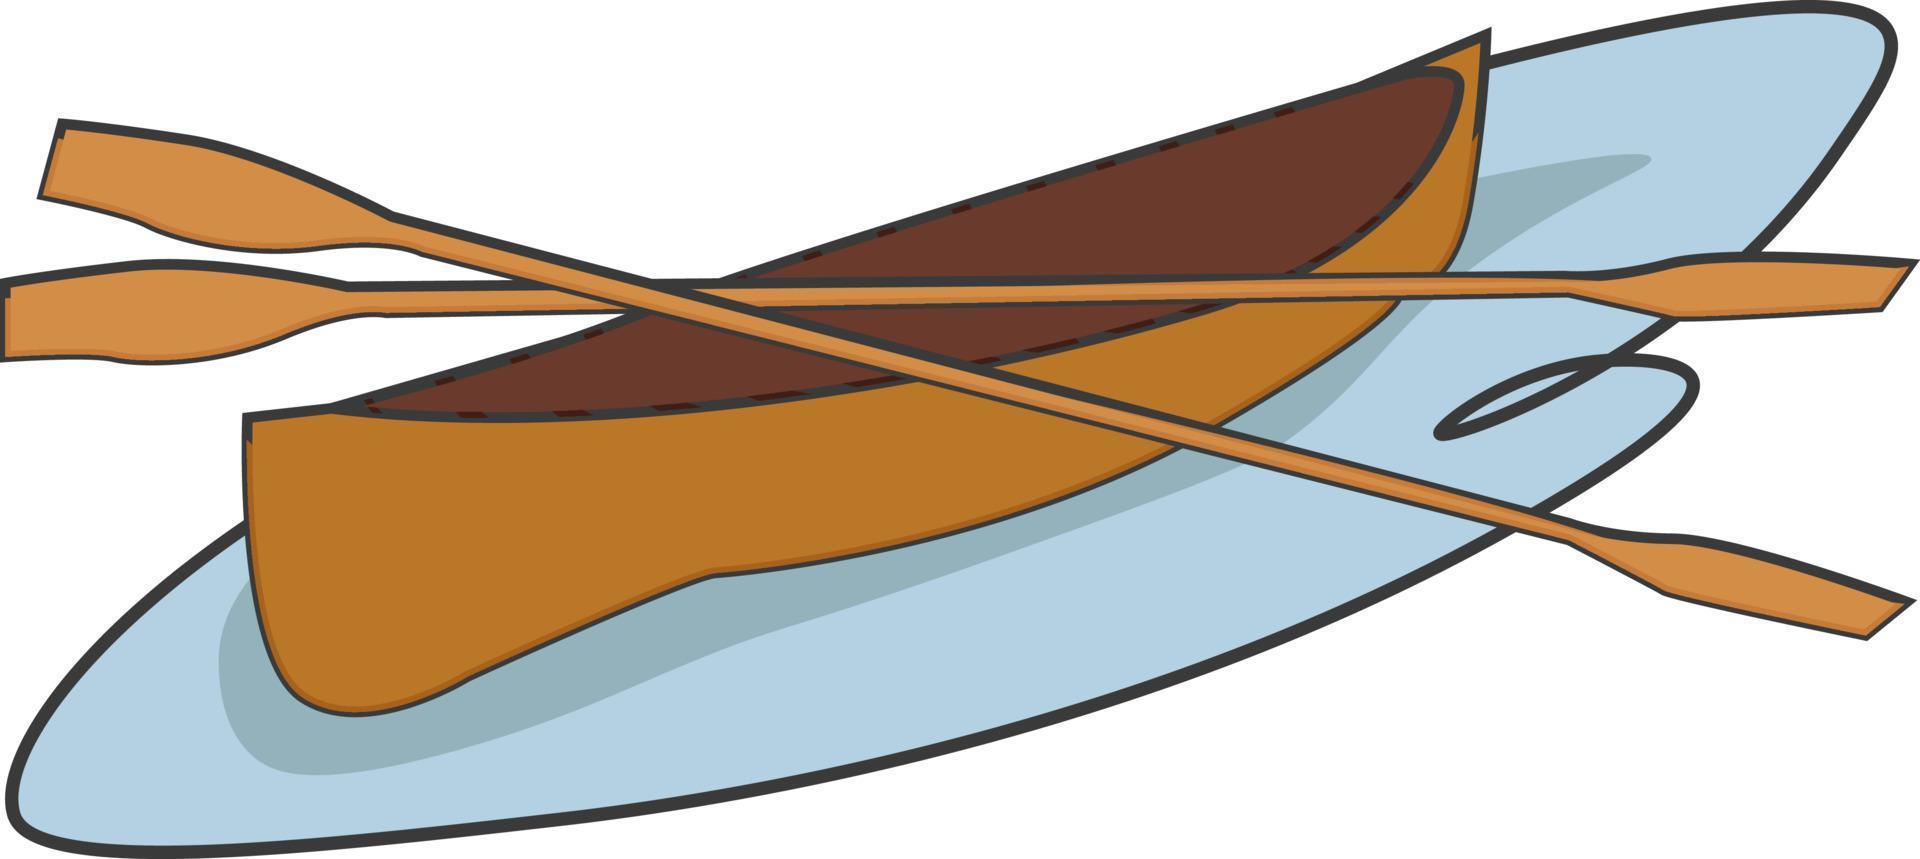 canoa en el agua, ilustración, vector sobre fondo blanco.